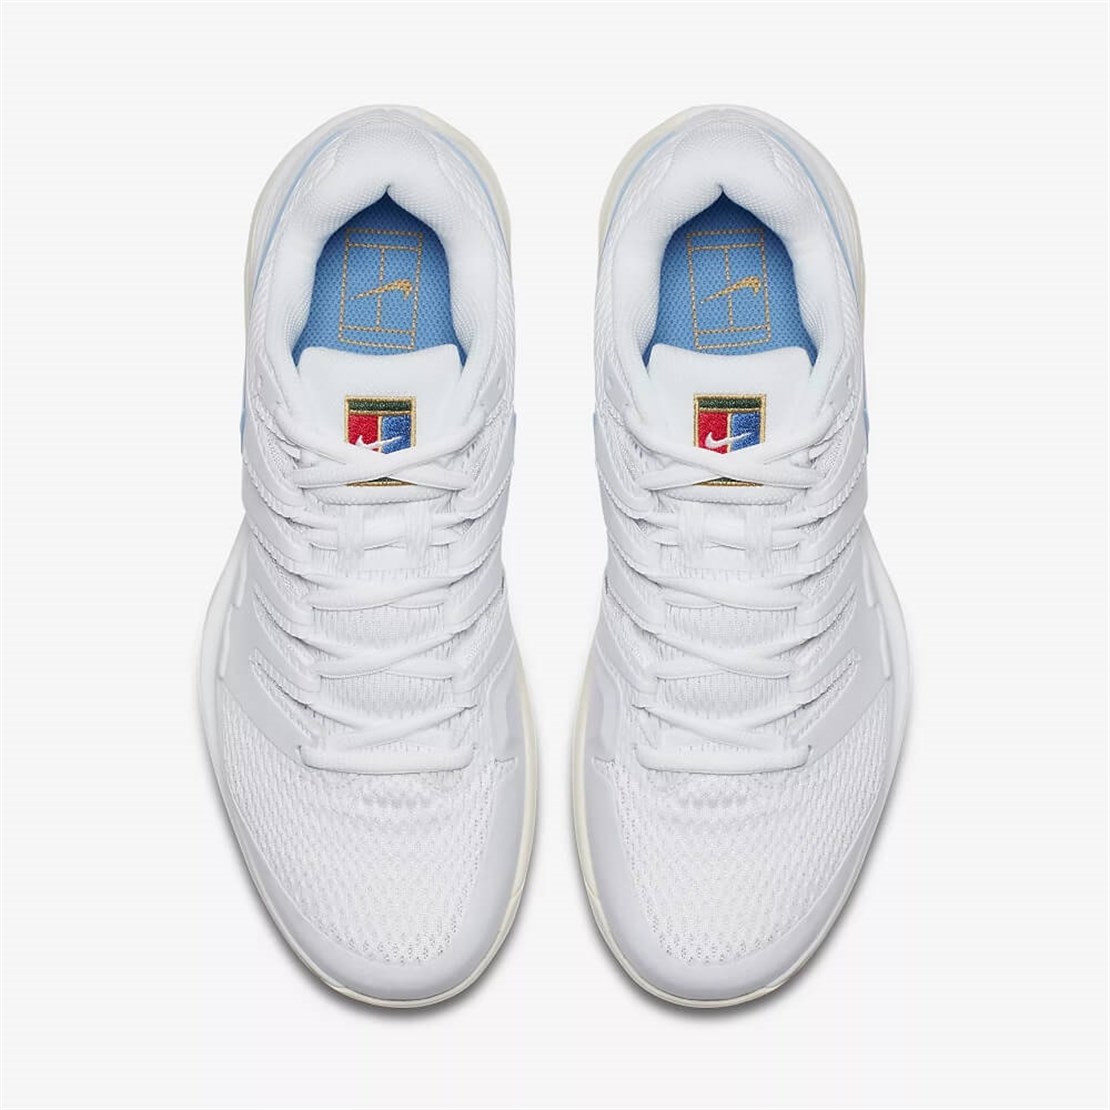 Nike Air Zoom Vapor X Beyaz/Buz Mavisi | Erkek Tenis Ayakkabısı | Merit Spor